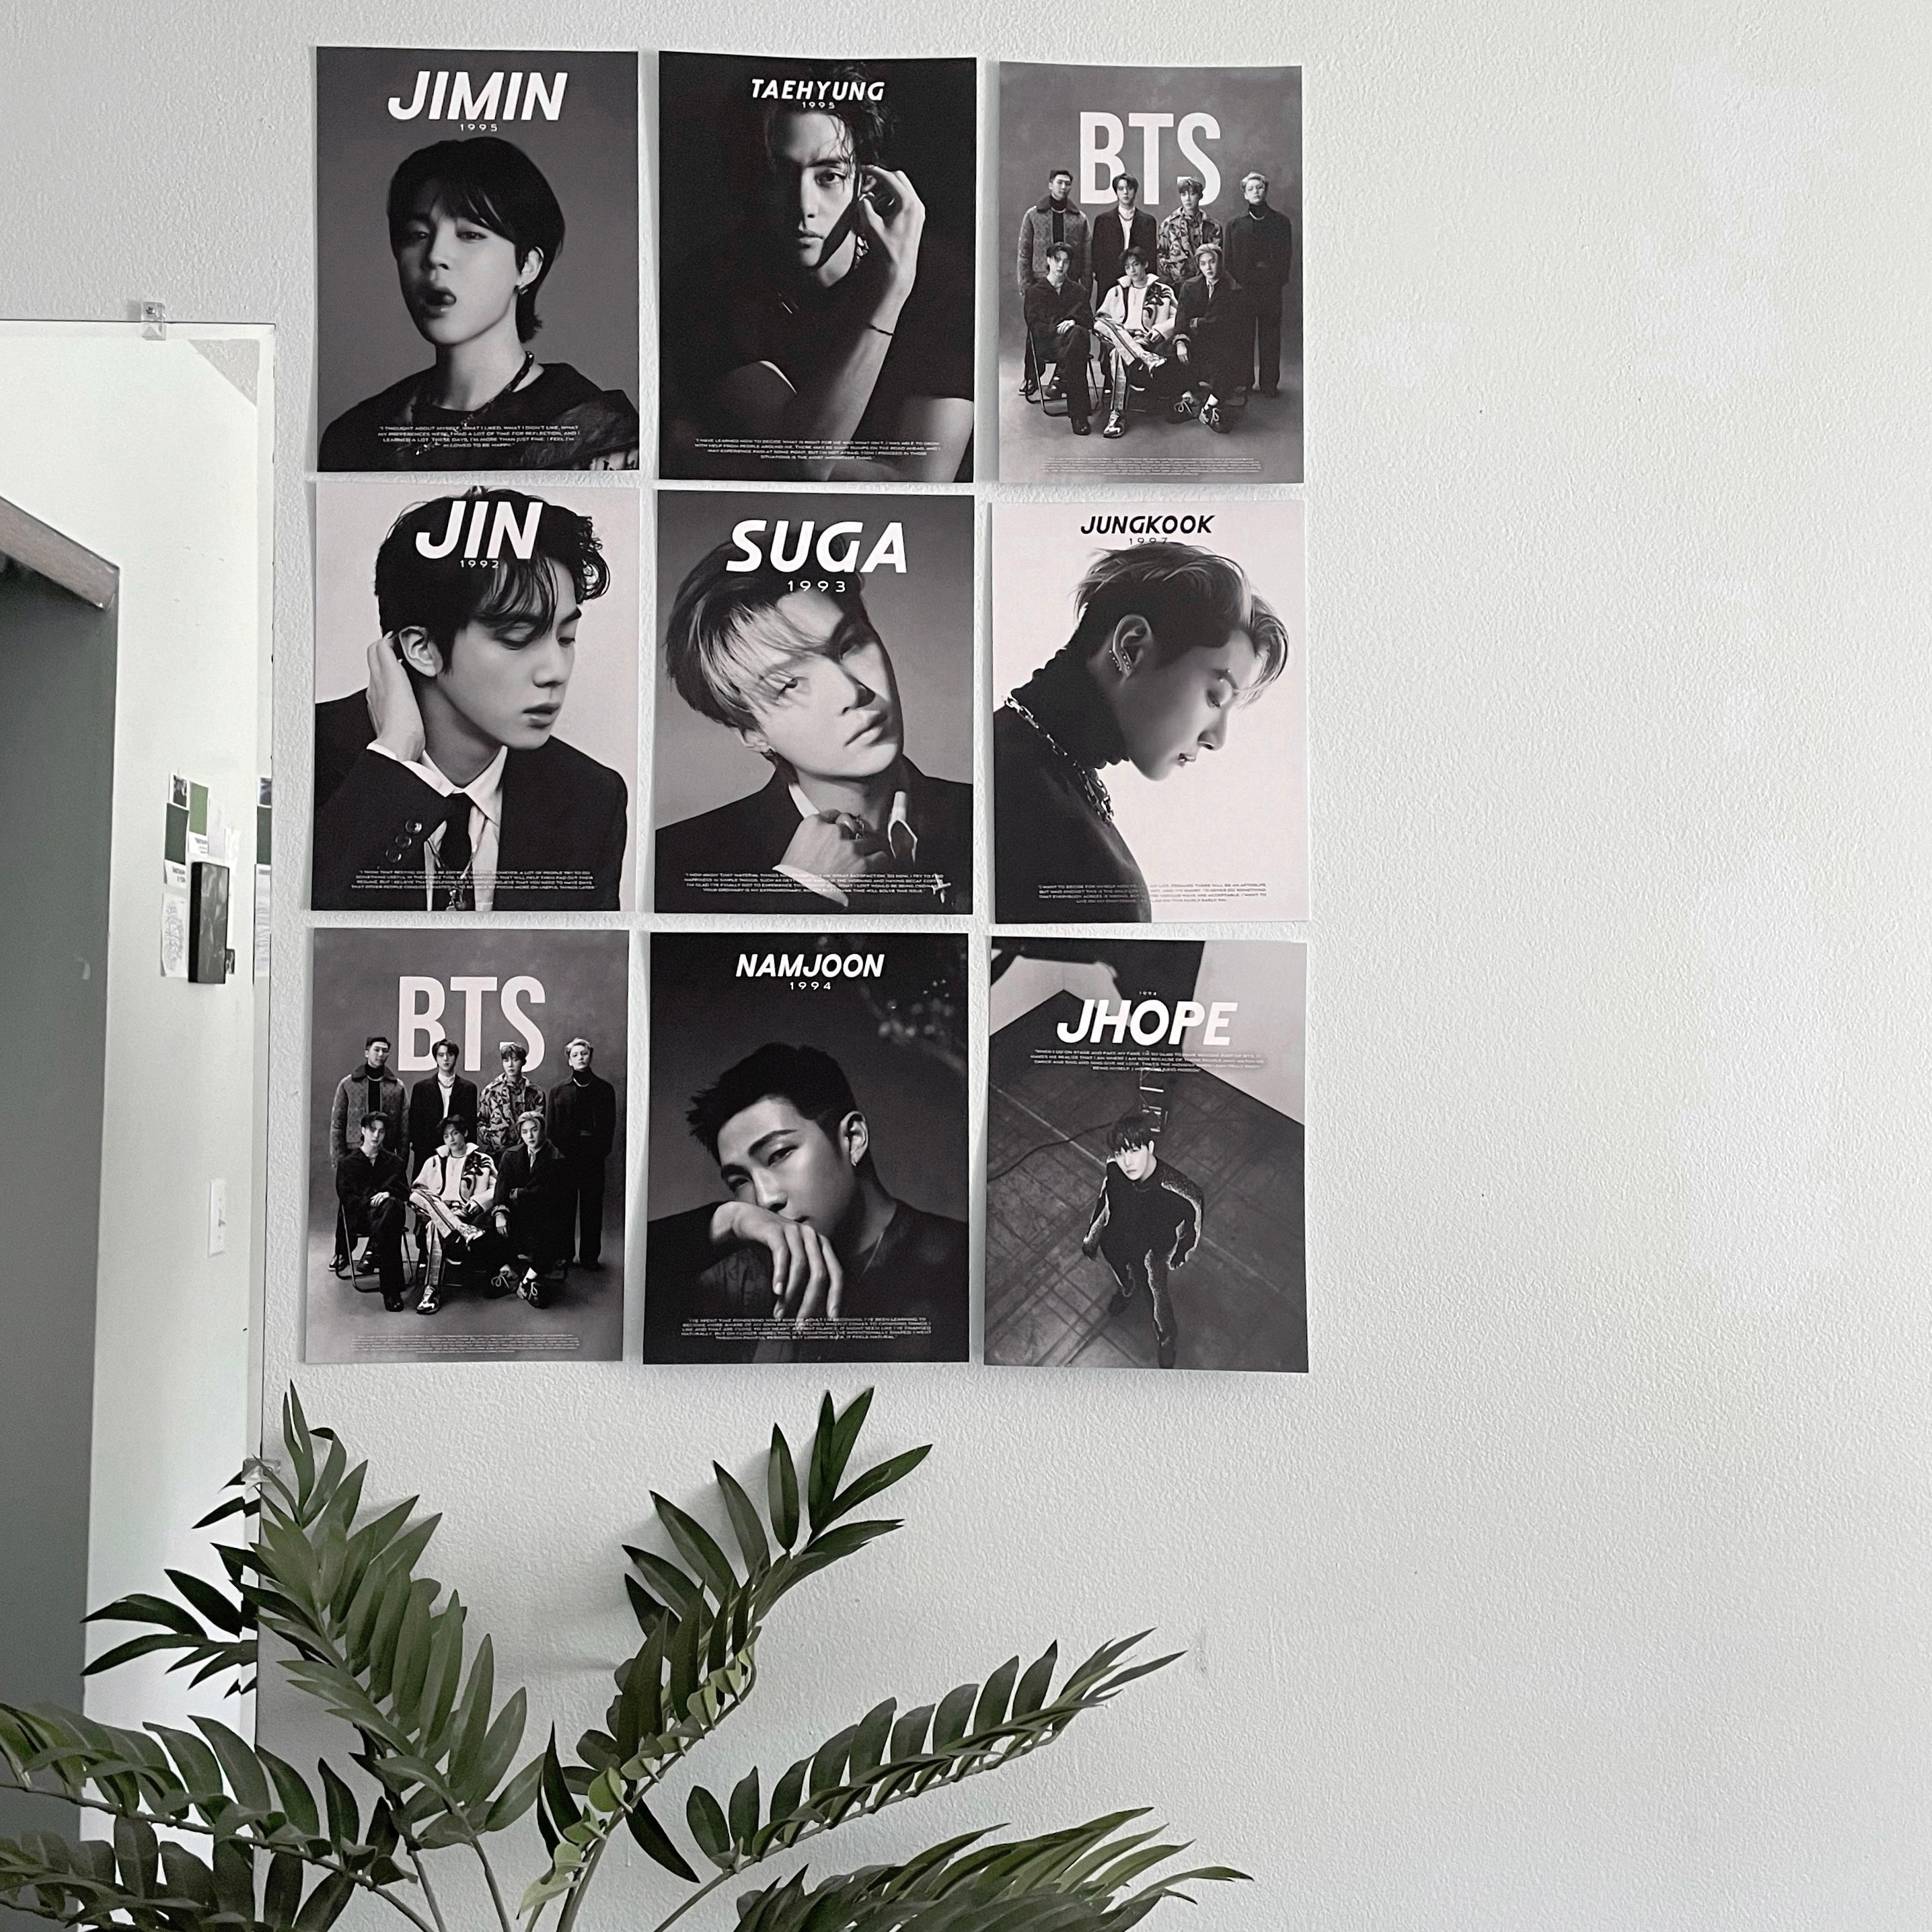 BTS Vogue & GQ Korea Poster I Graphic Prints Wall Decor 